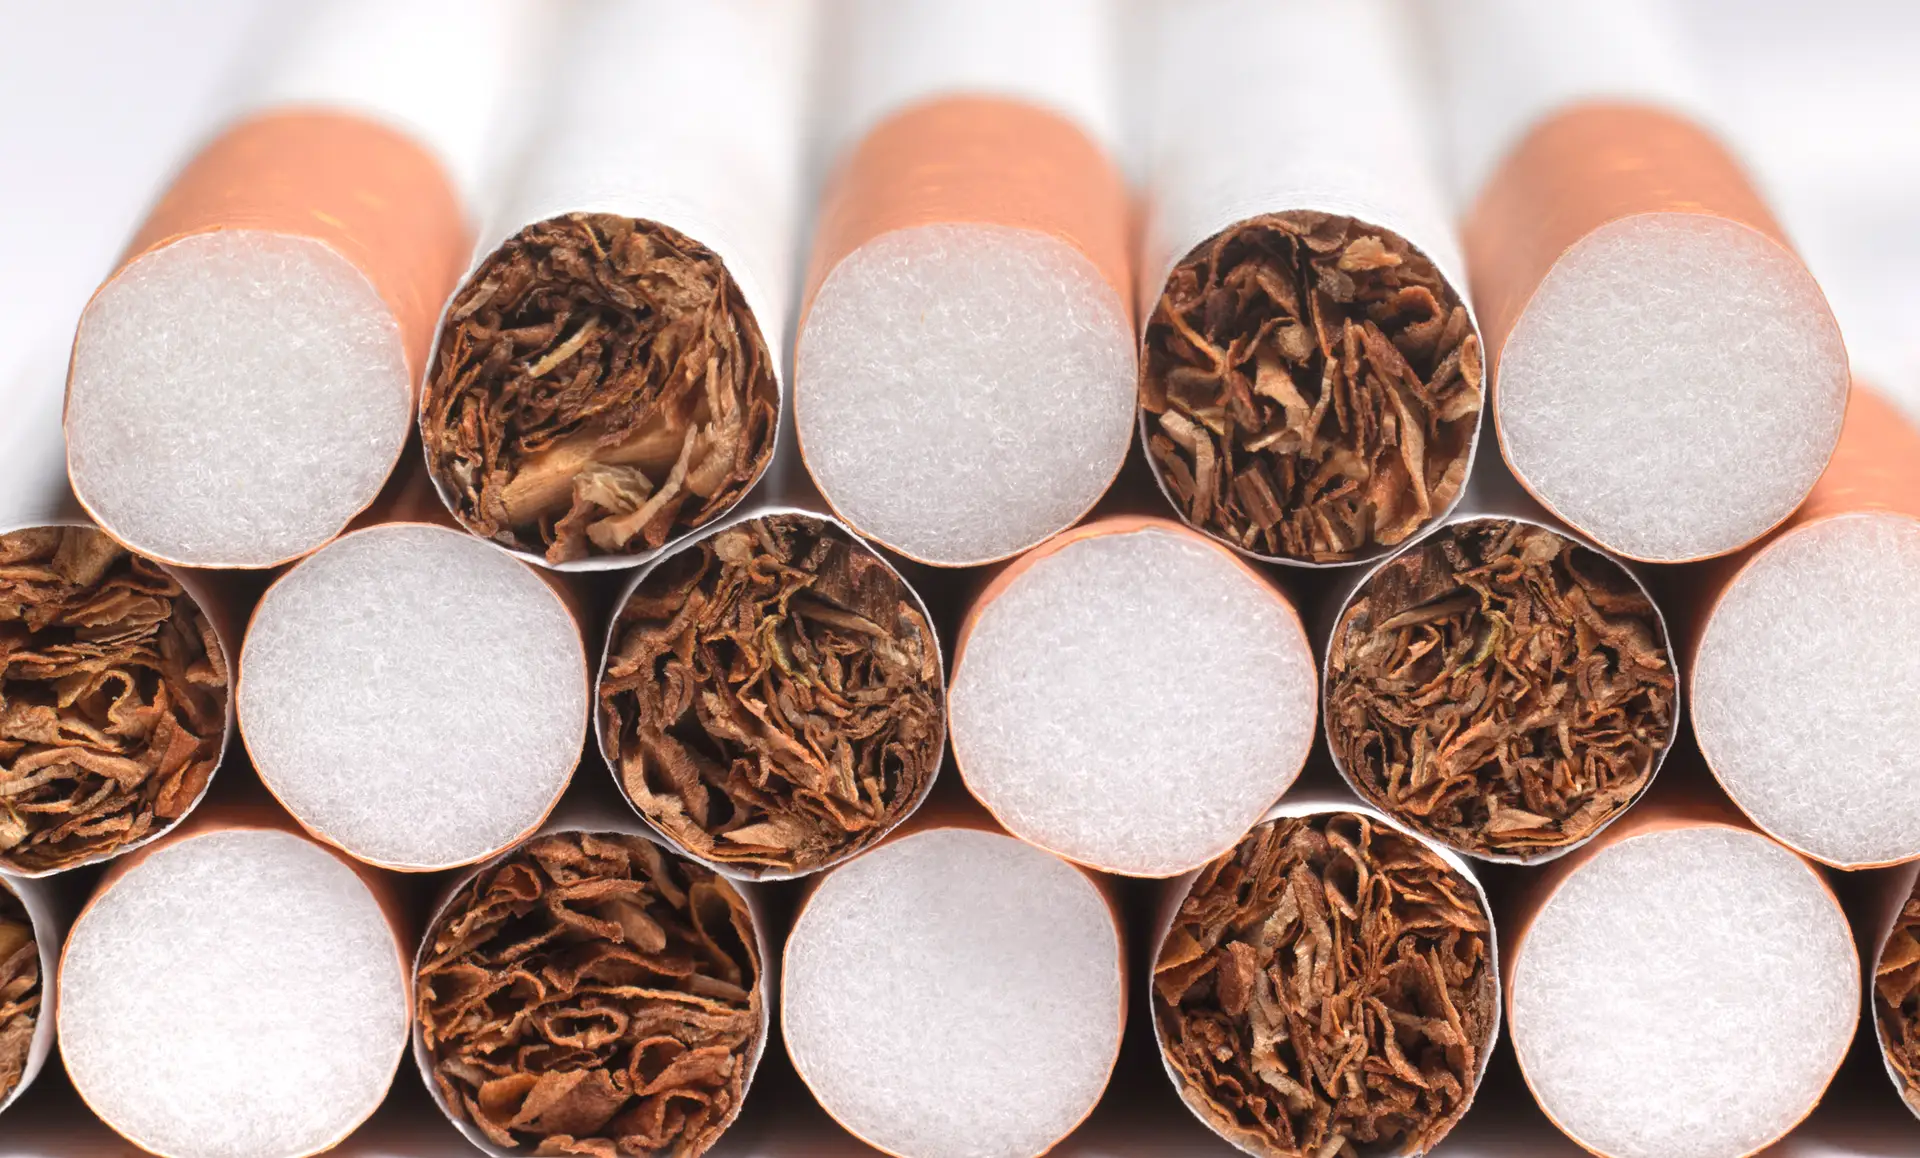 Doze arguidos e 226 kg apreendidos em investigação a consumo de folha de tabaco